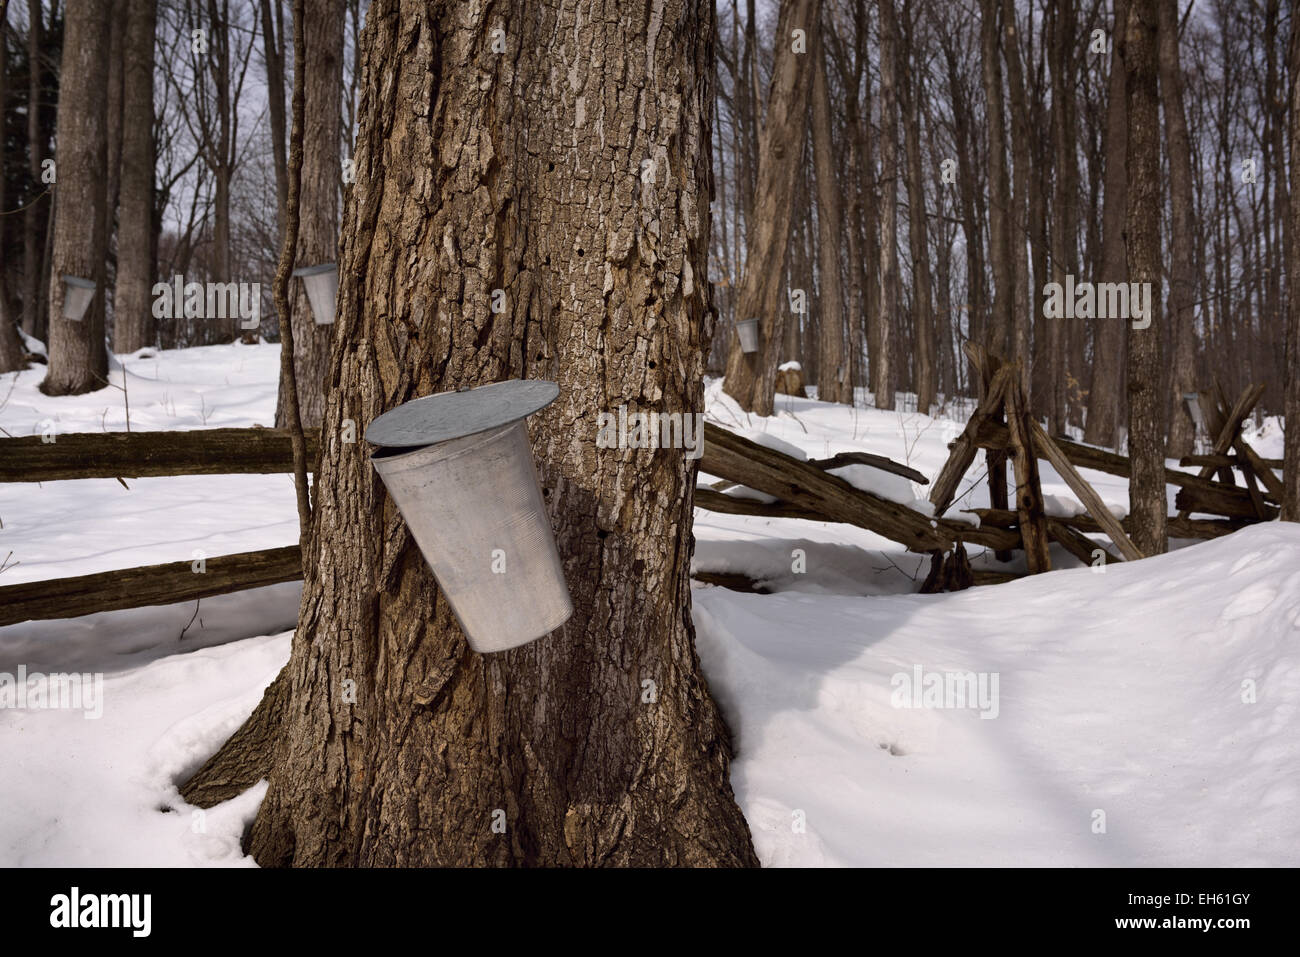 Aluminium-Eimer auf Zucker-Ahornbäume in Ontario Wald, Sap für Ahornsirup im Schnee sammeln bedeckt Wald Ontario Kanada Stockfoto